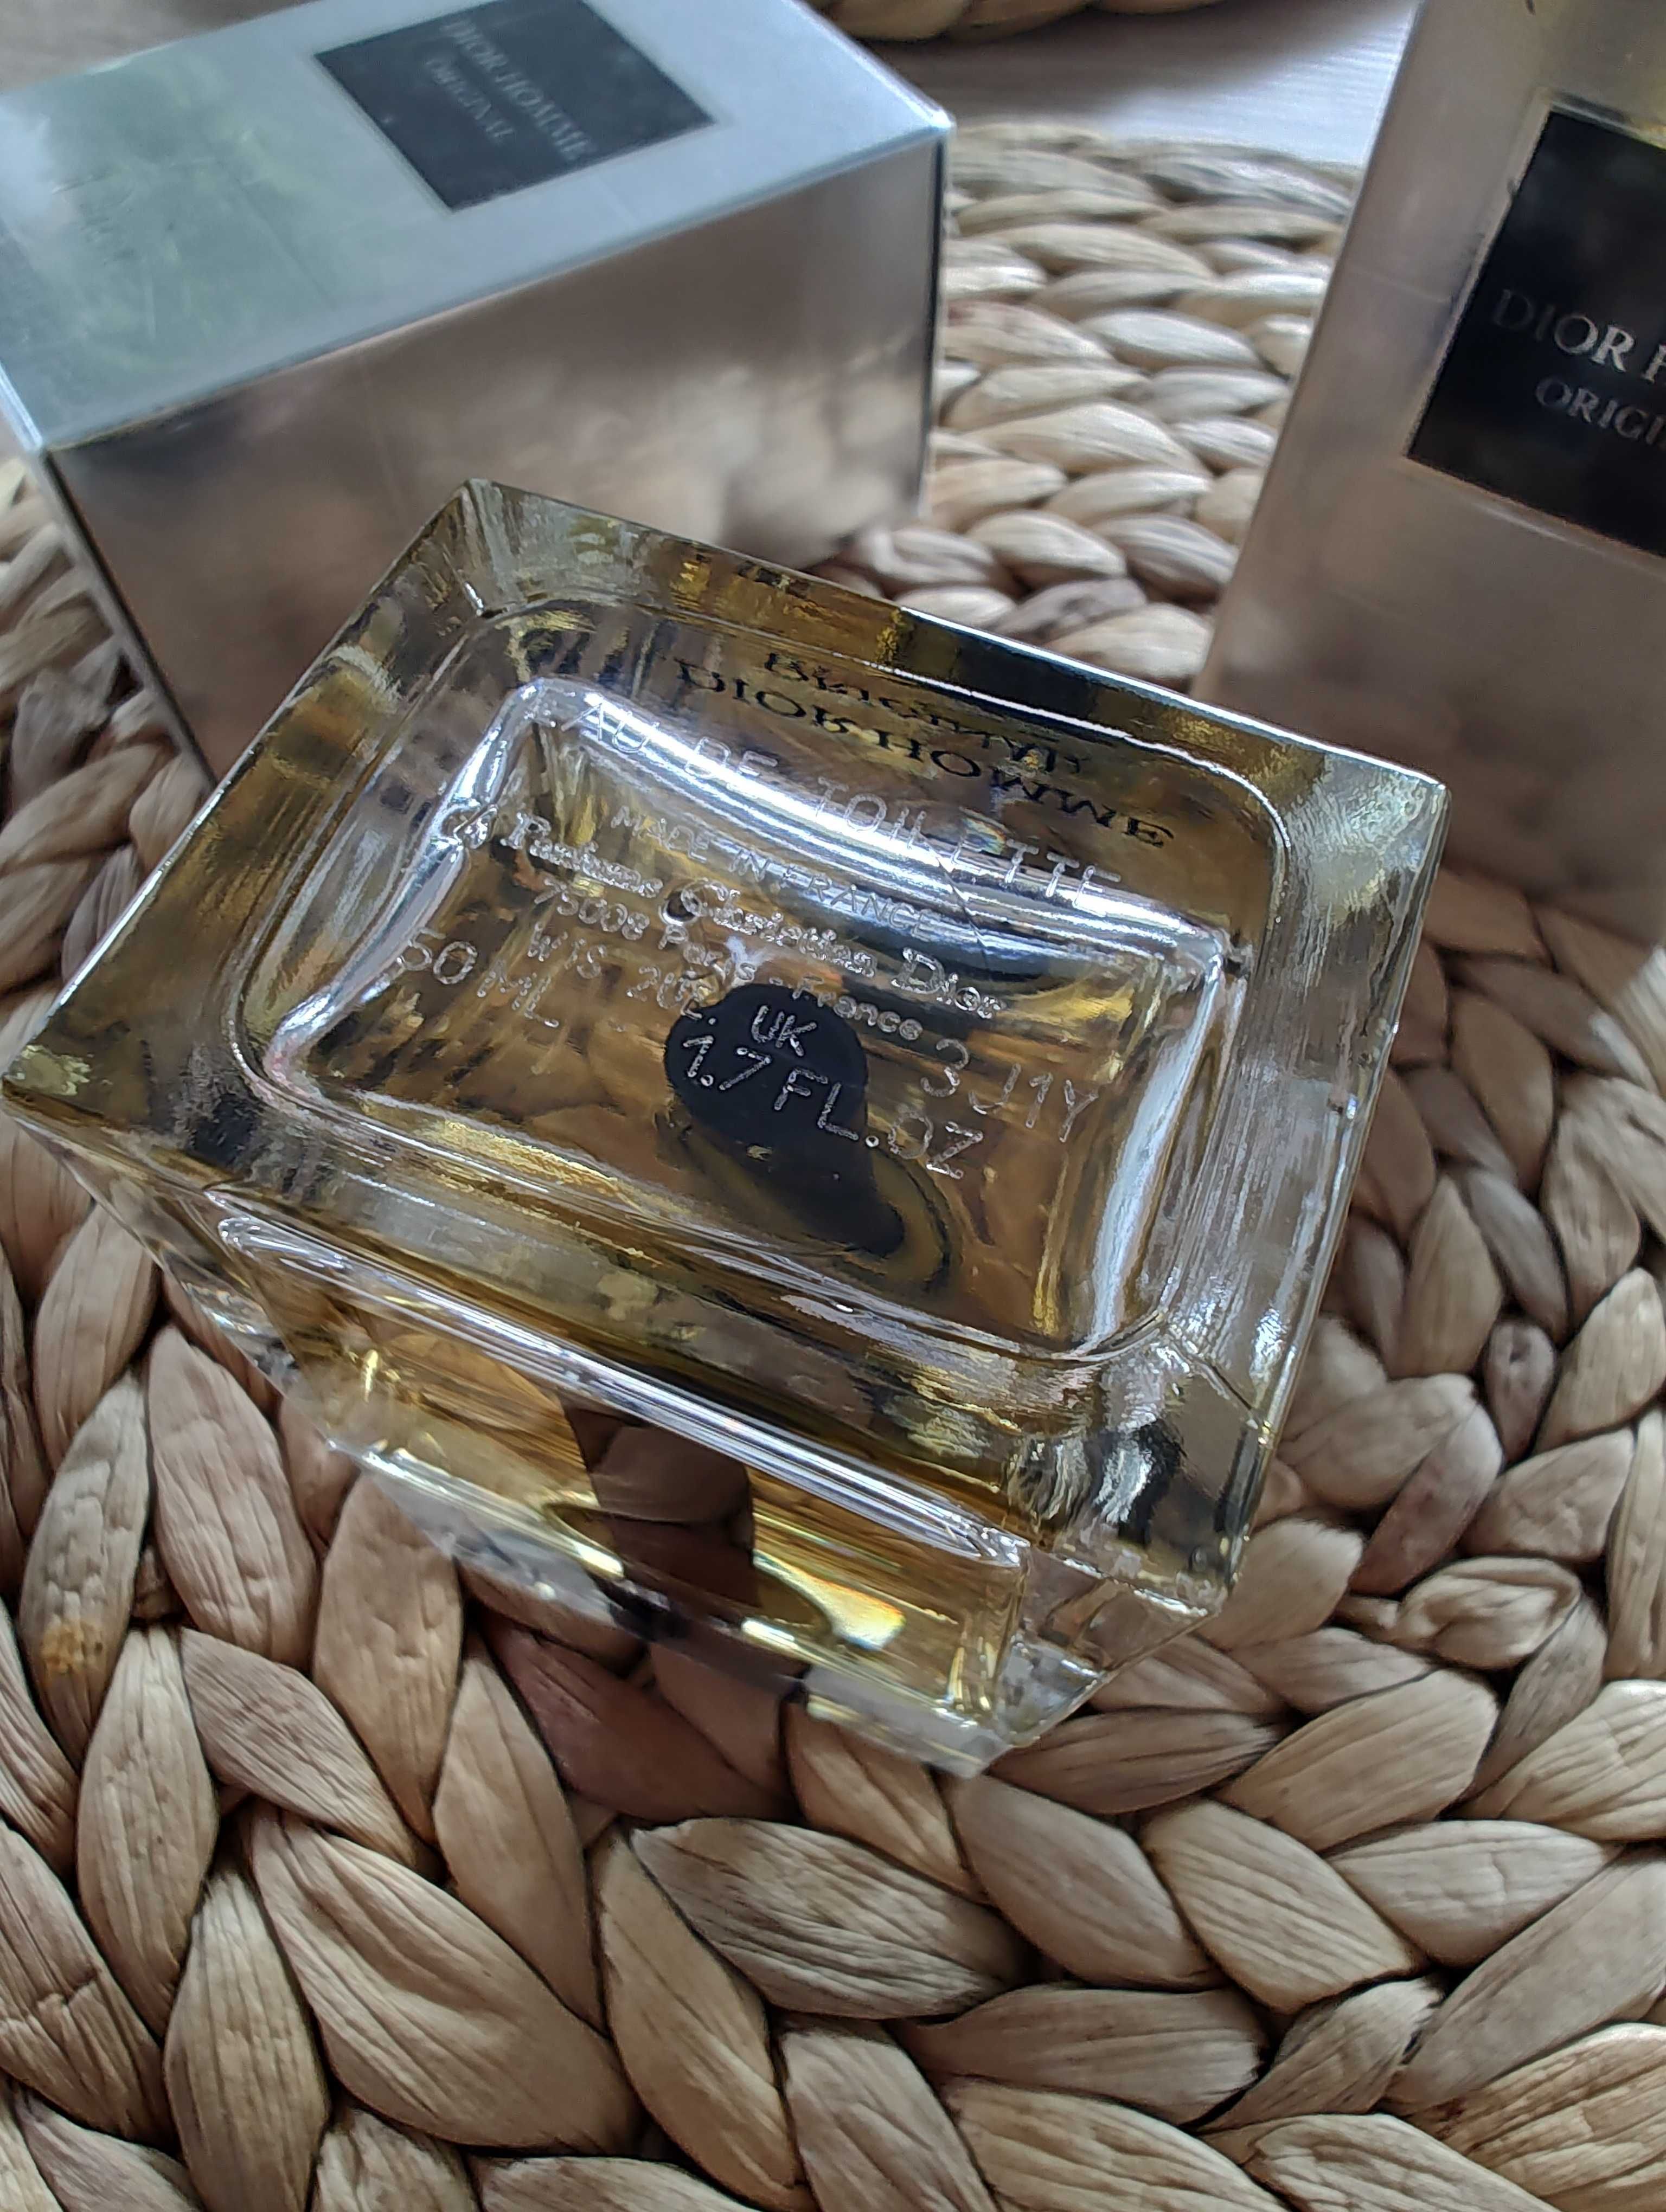 Perfumy Dior Homme Original 50 ml nowe w folii na prezent dla mężczyzn